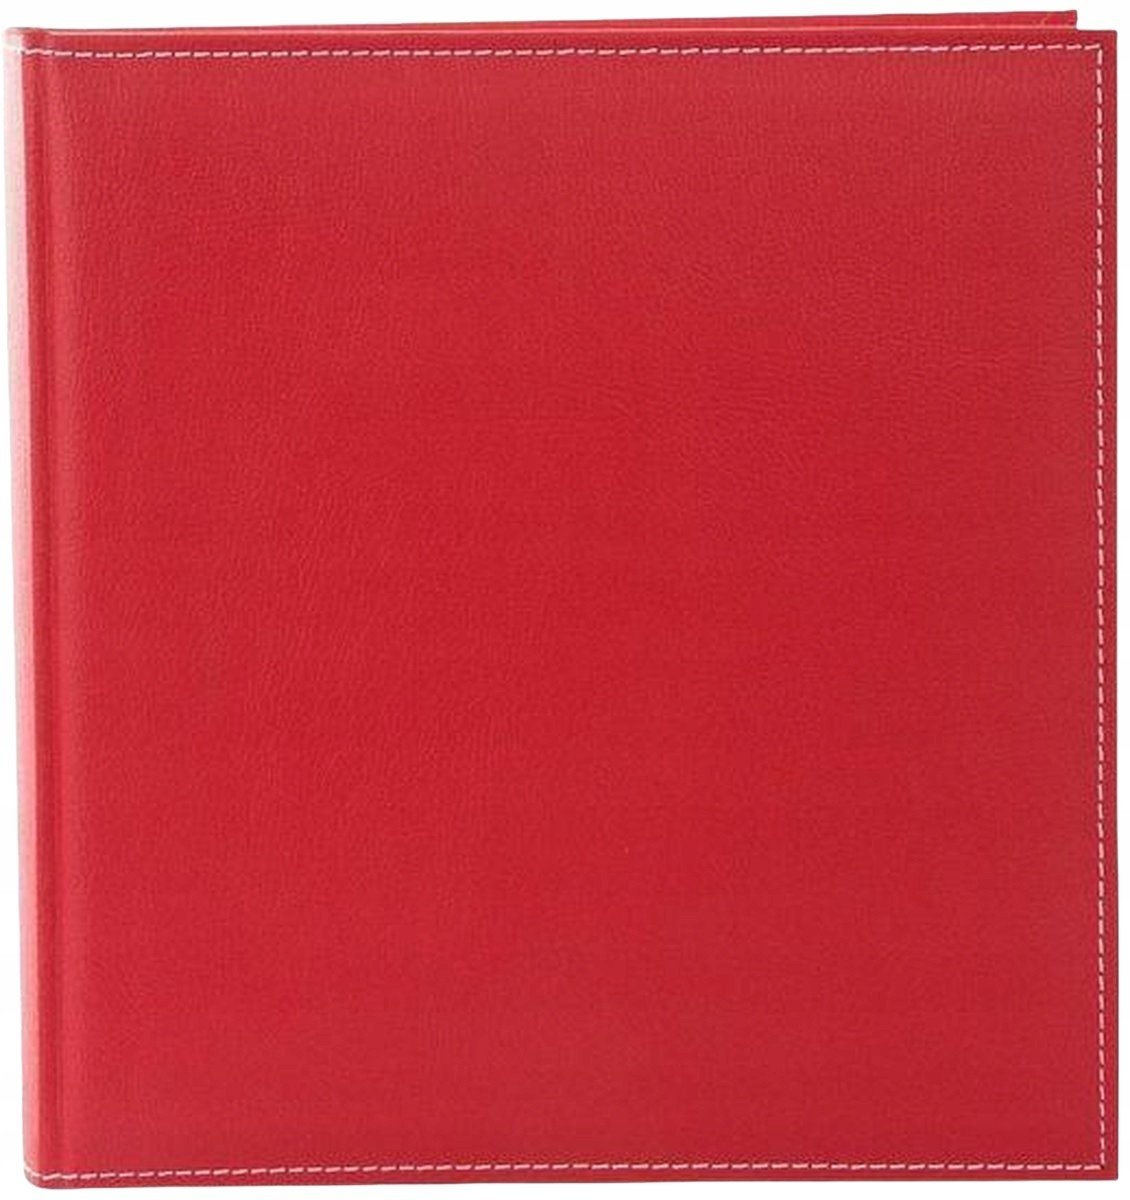 Album Cezanne červená ekokůže 100 stran černé